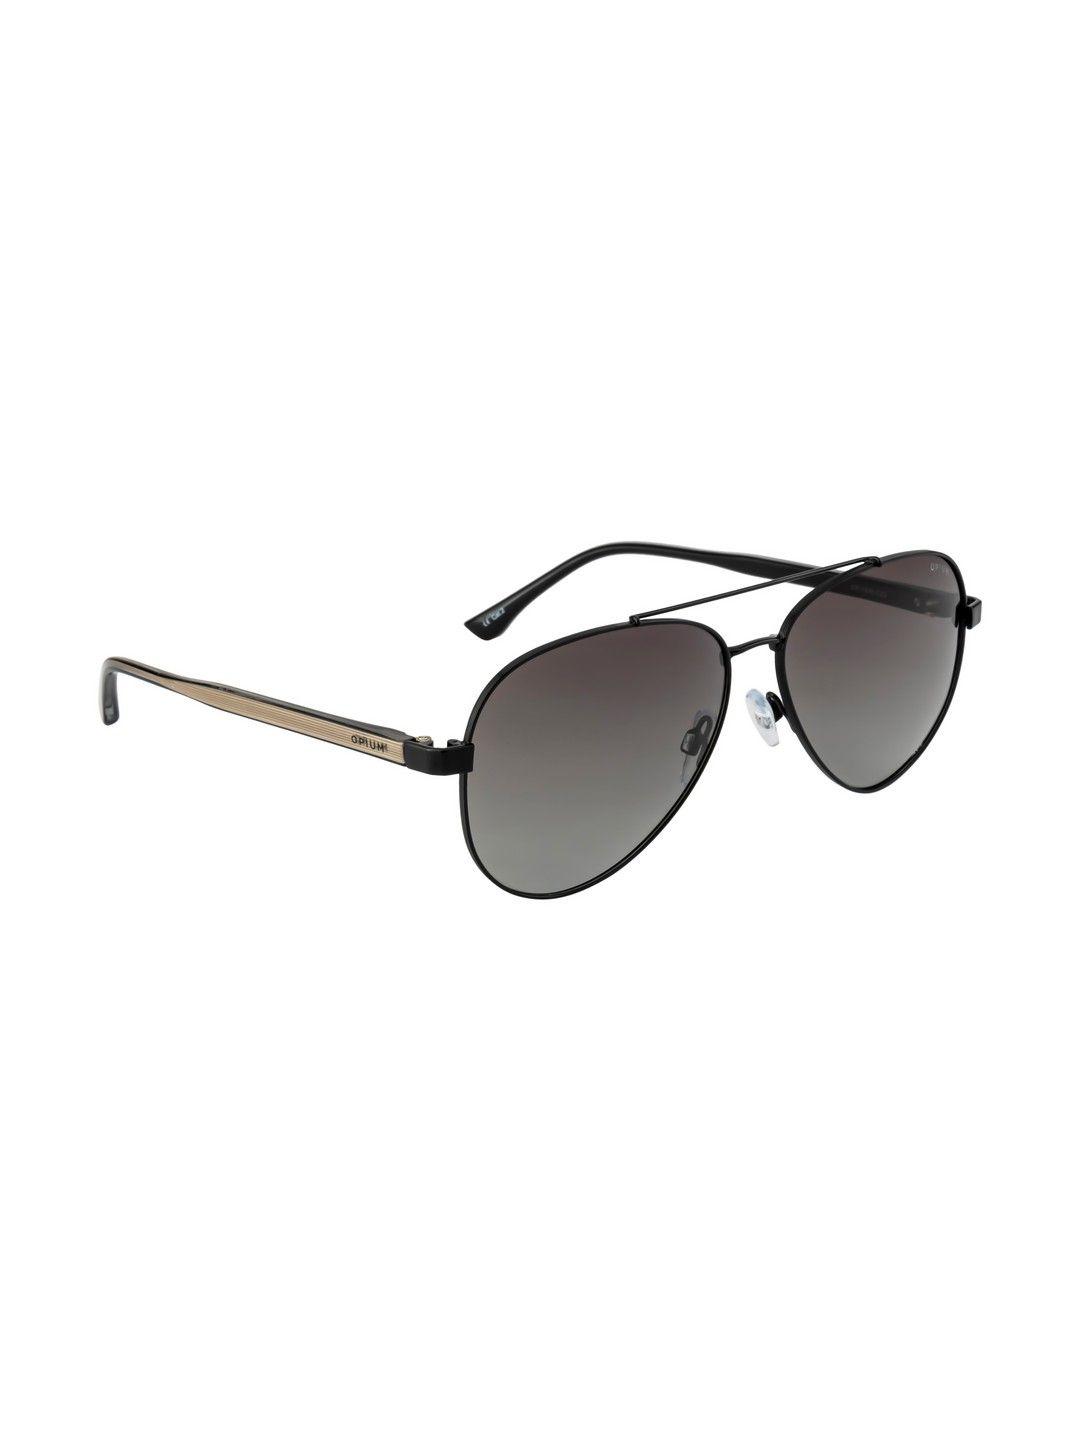 opium men grey lens & black aviator sunglasses with uv protected lens op-1930-c03